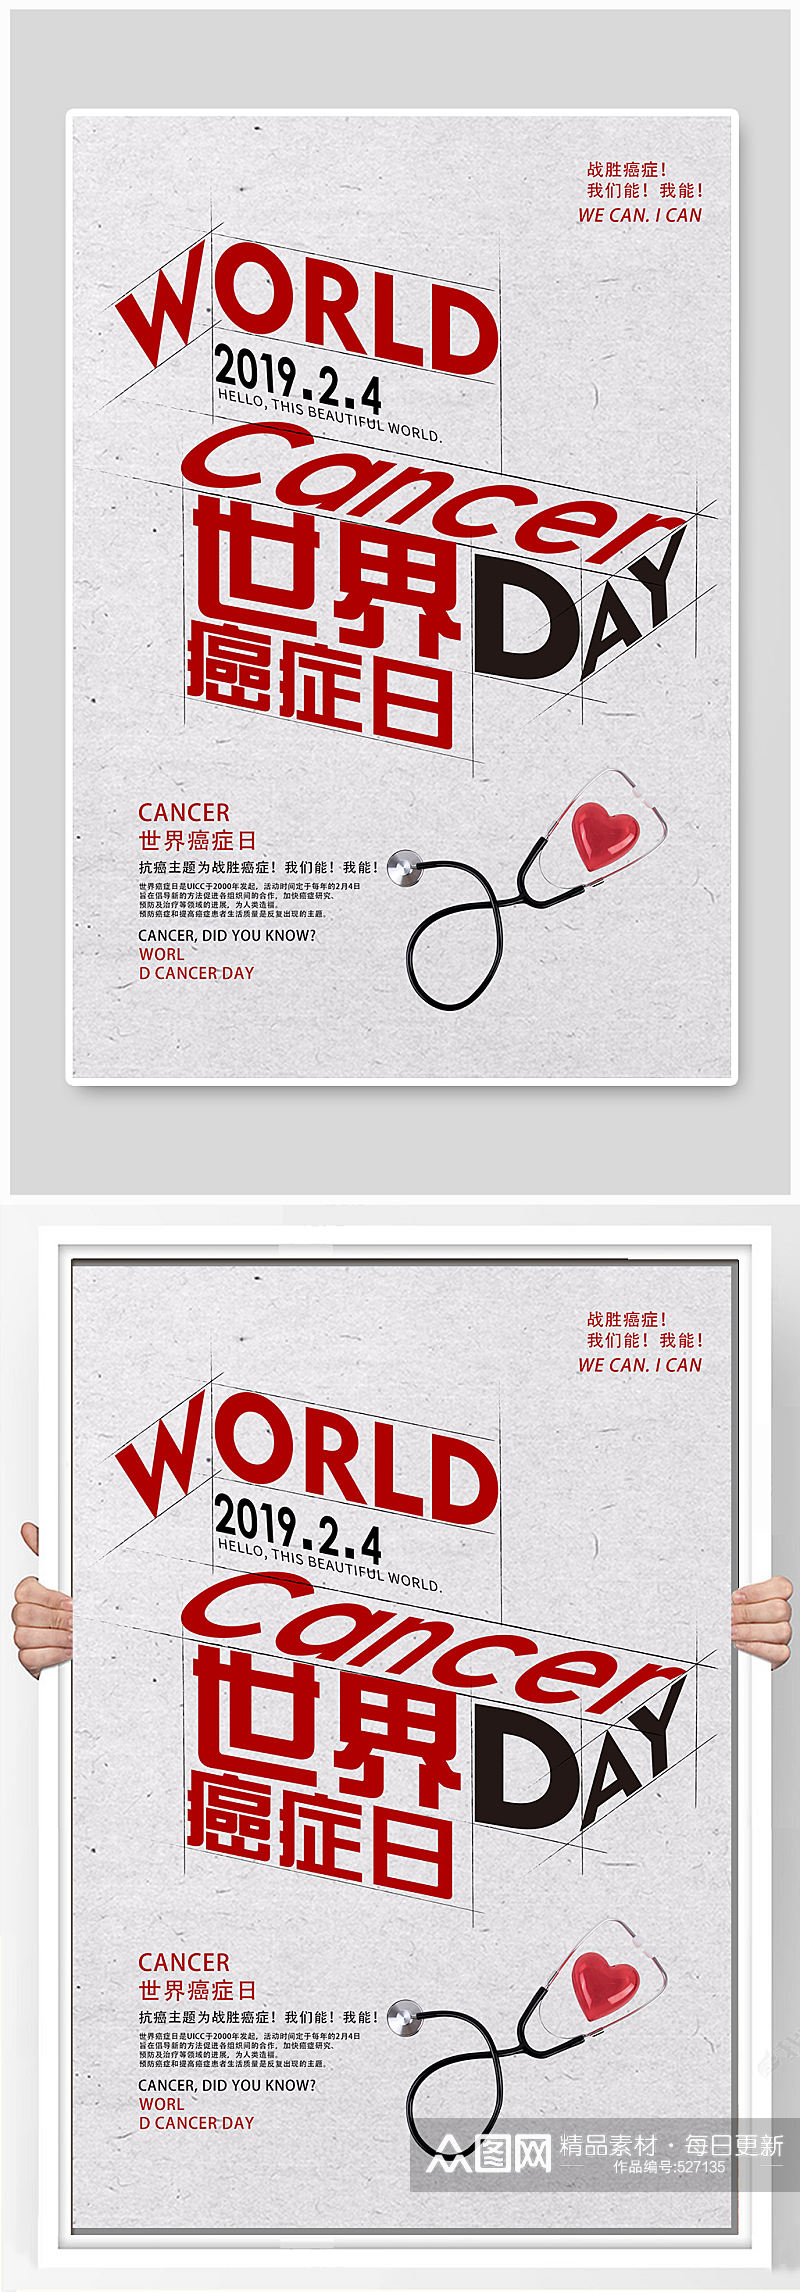 世界抗癌日宣传海报素材